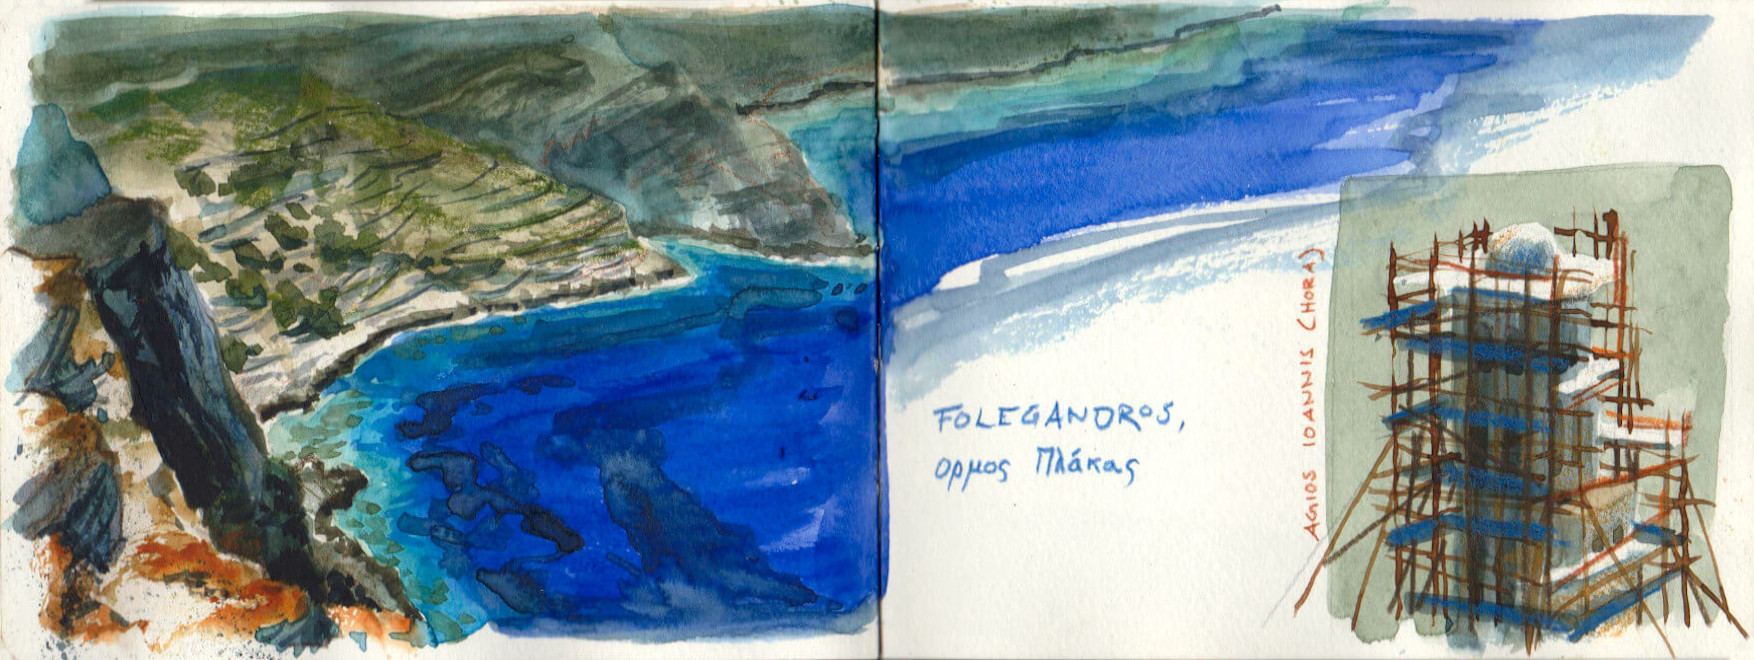 Folegandros Island